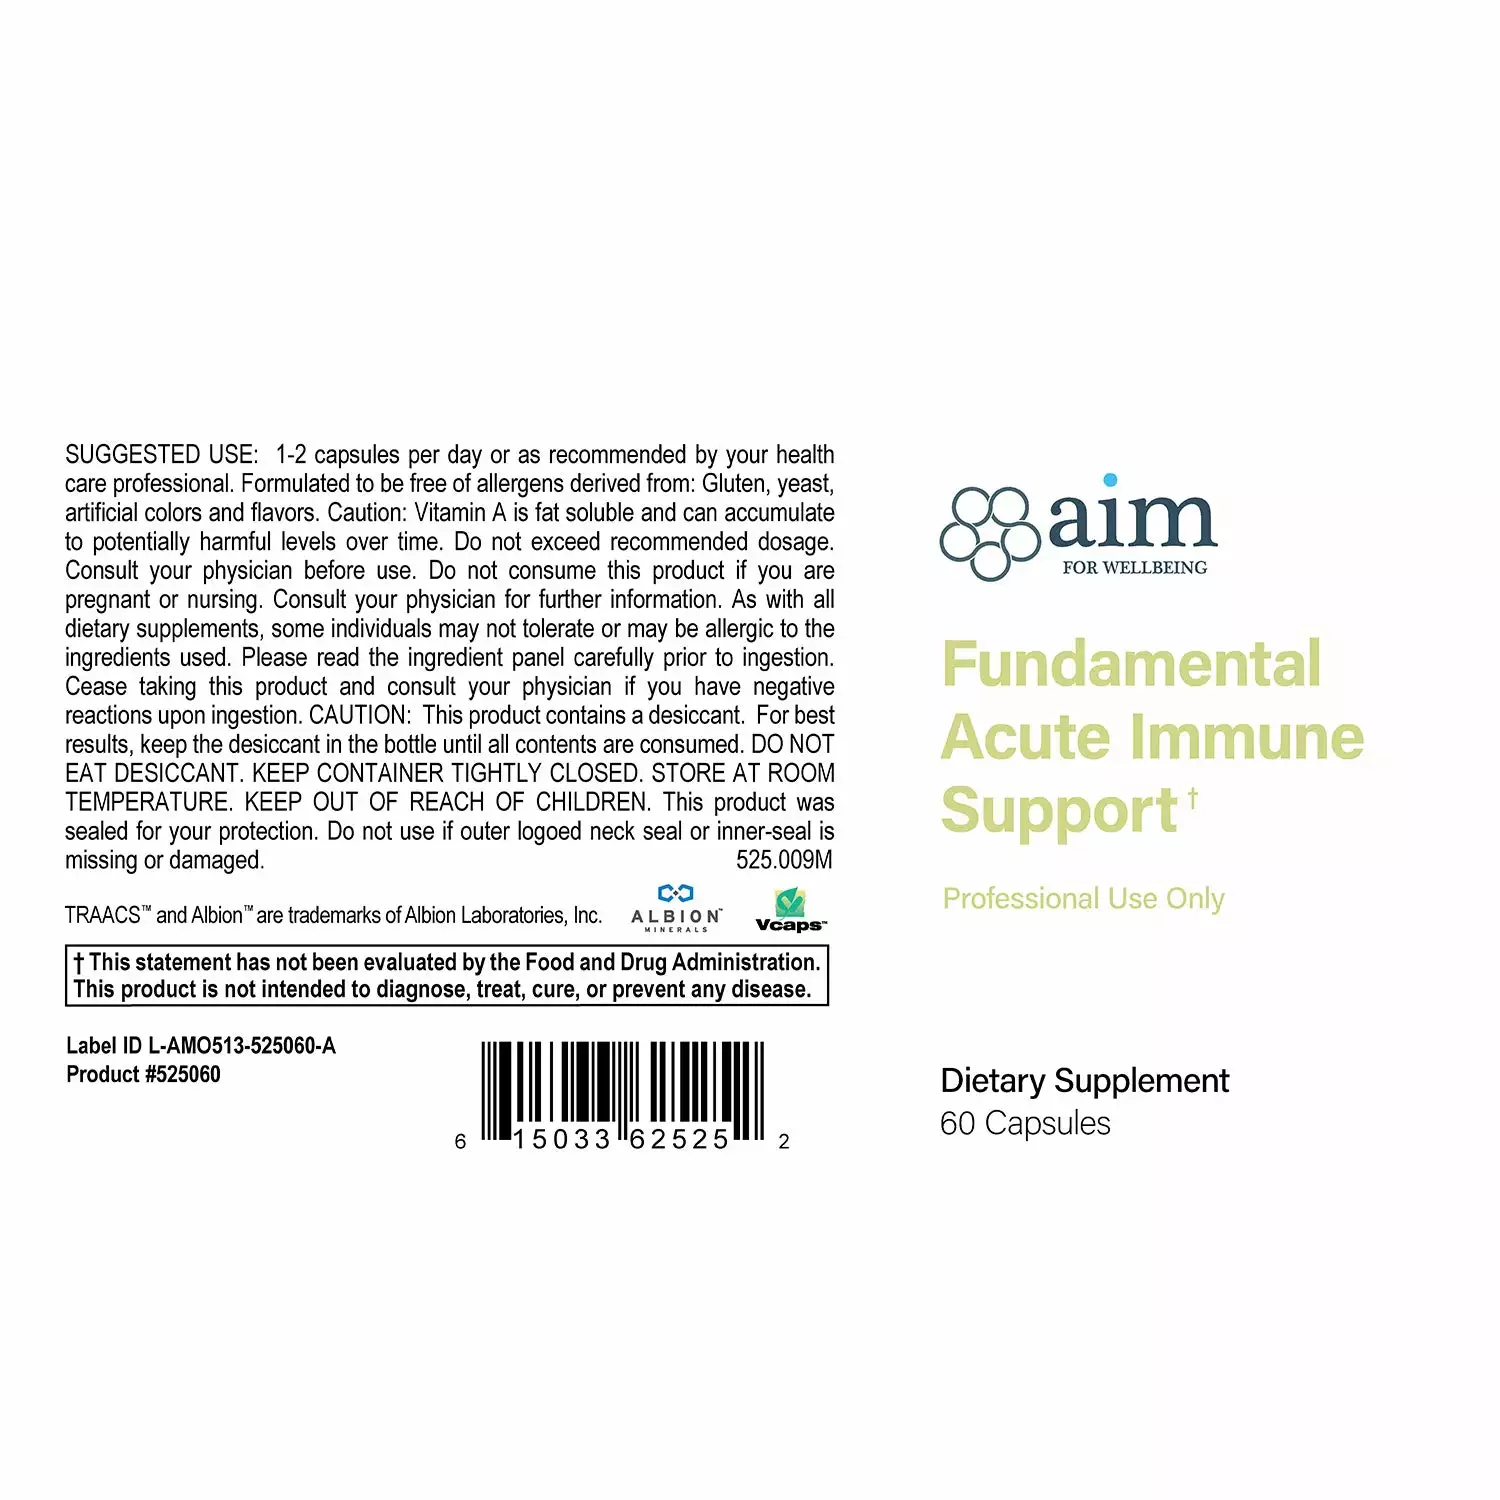 Fundamental Acute Immune Support